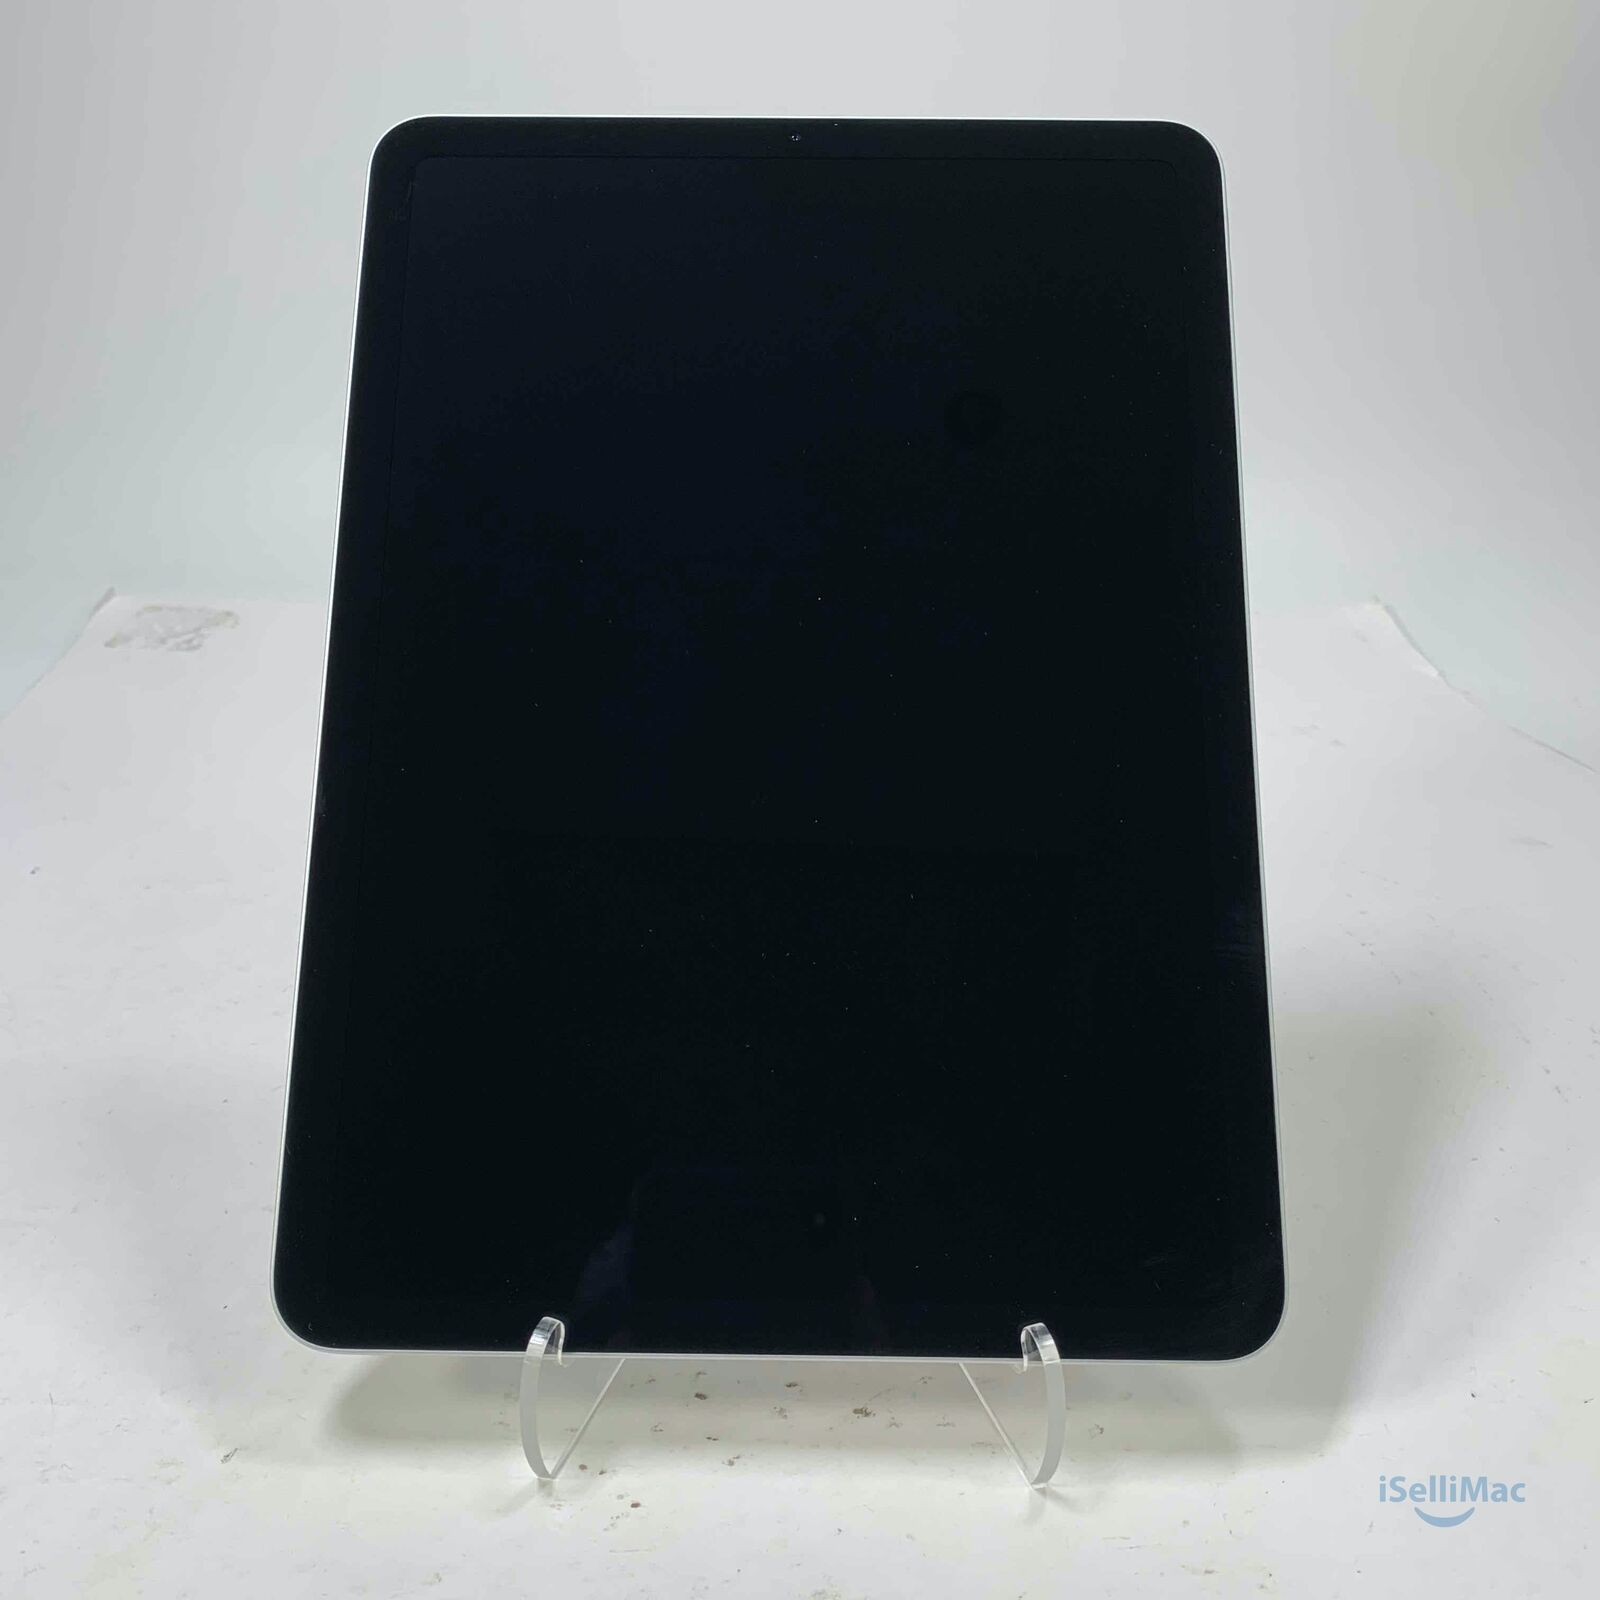 Apple iPad Air 4 64GB Silver A2324 MYHX2LL/A +A Grade + Warranty 